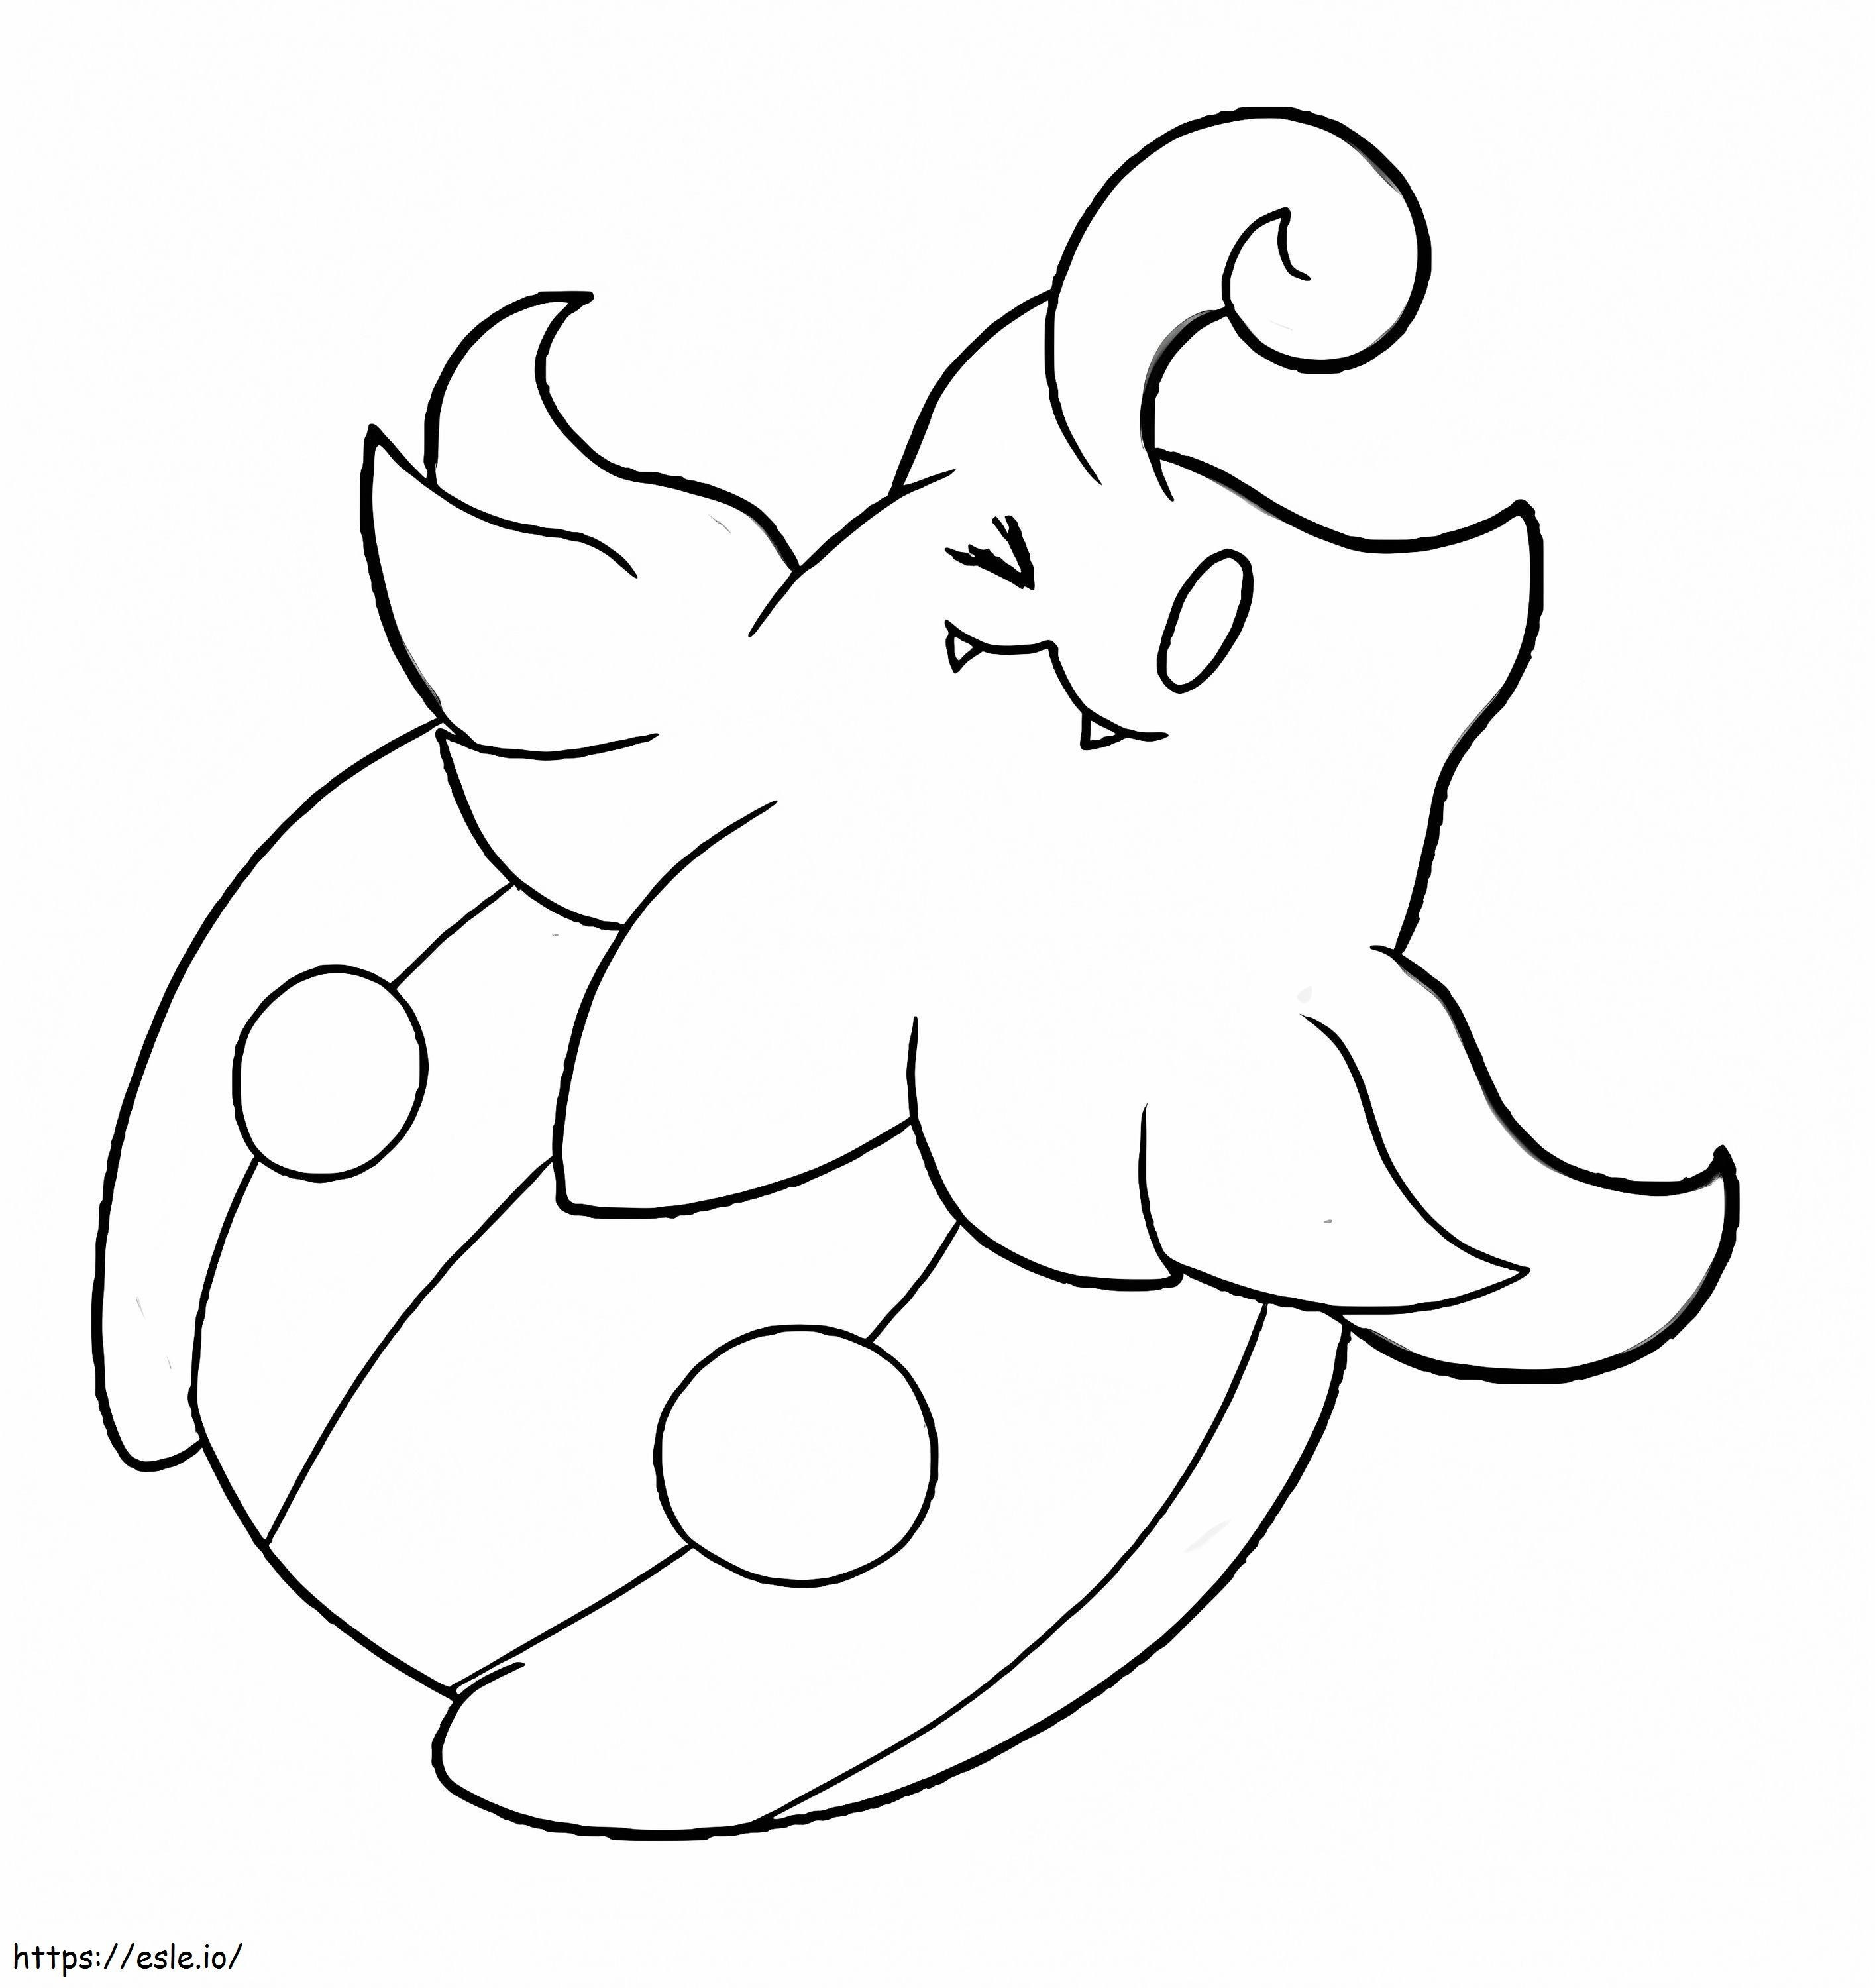 Coloriage Citrouille Pokémon 4 à imprimer dessin